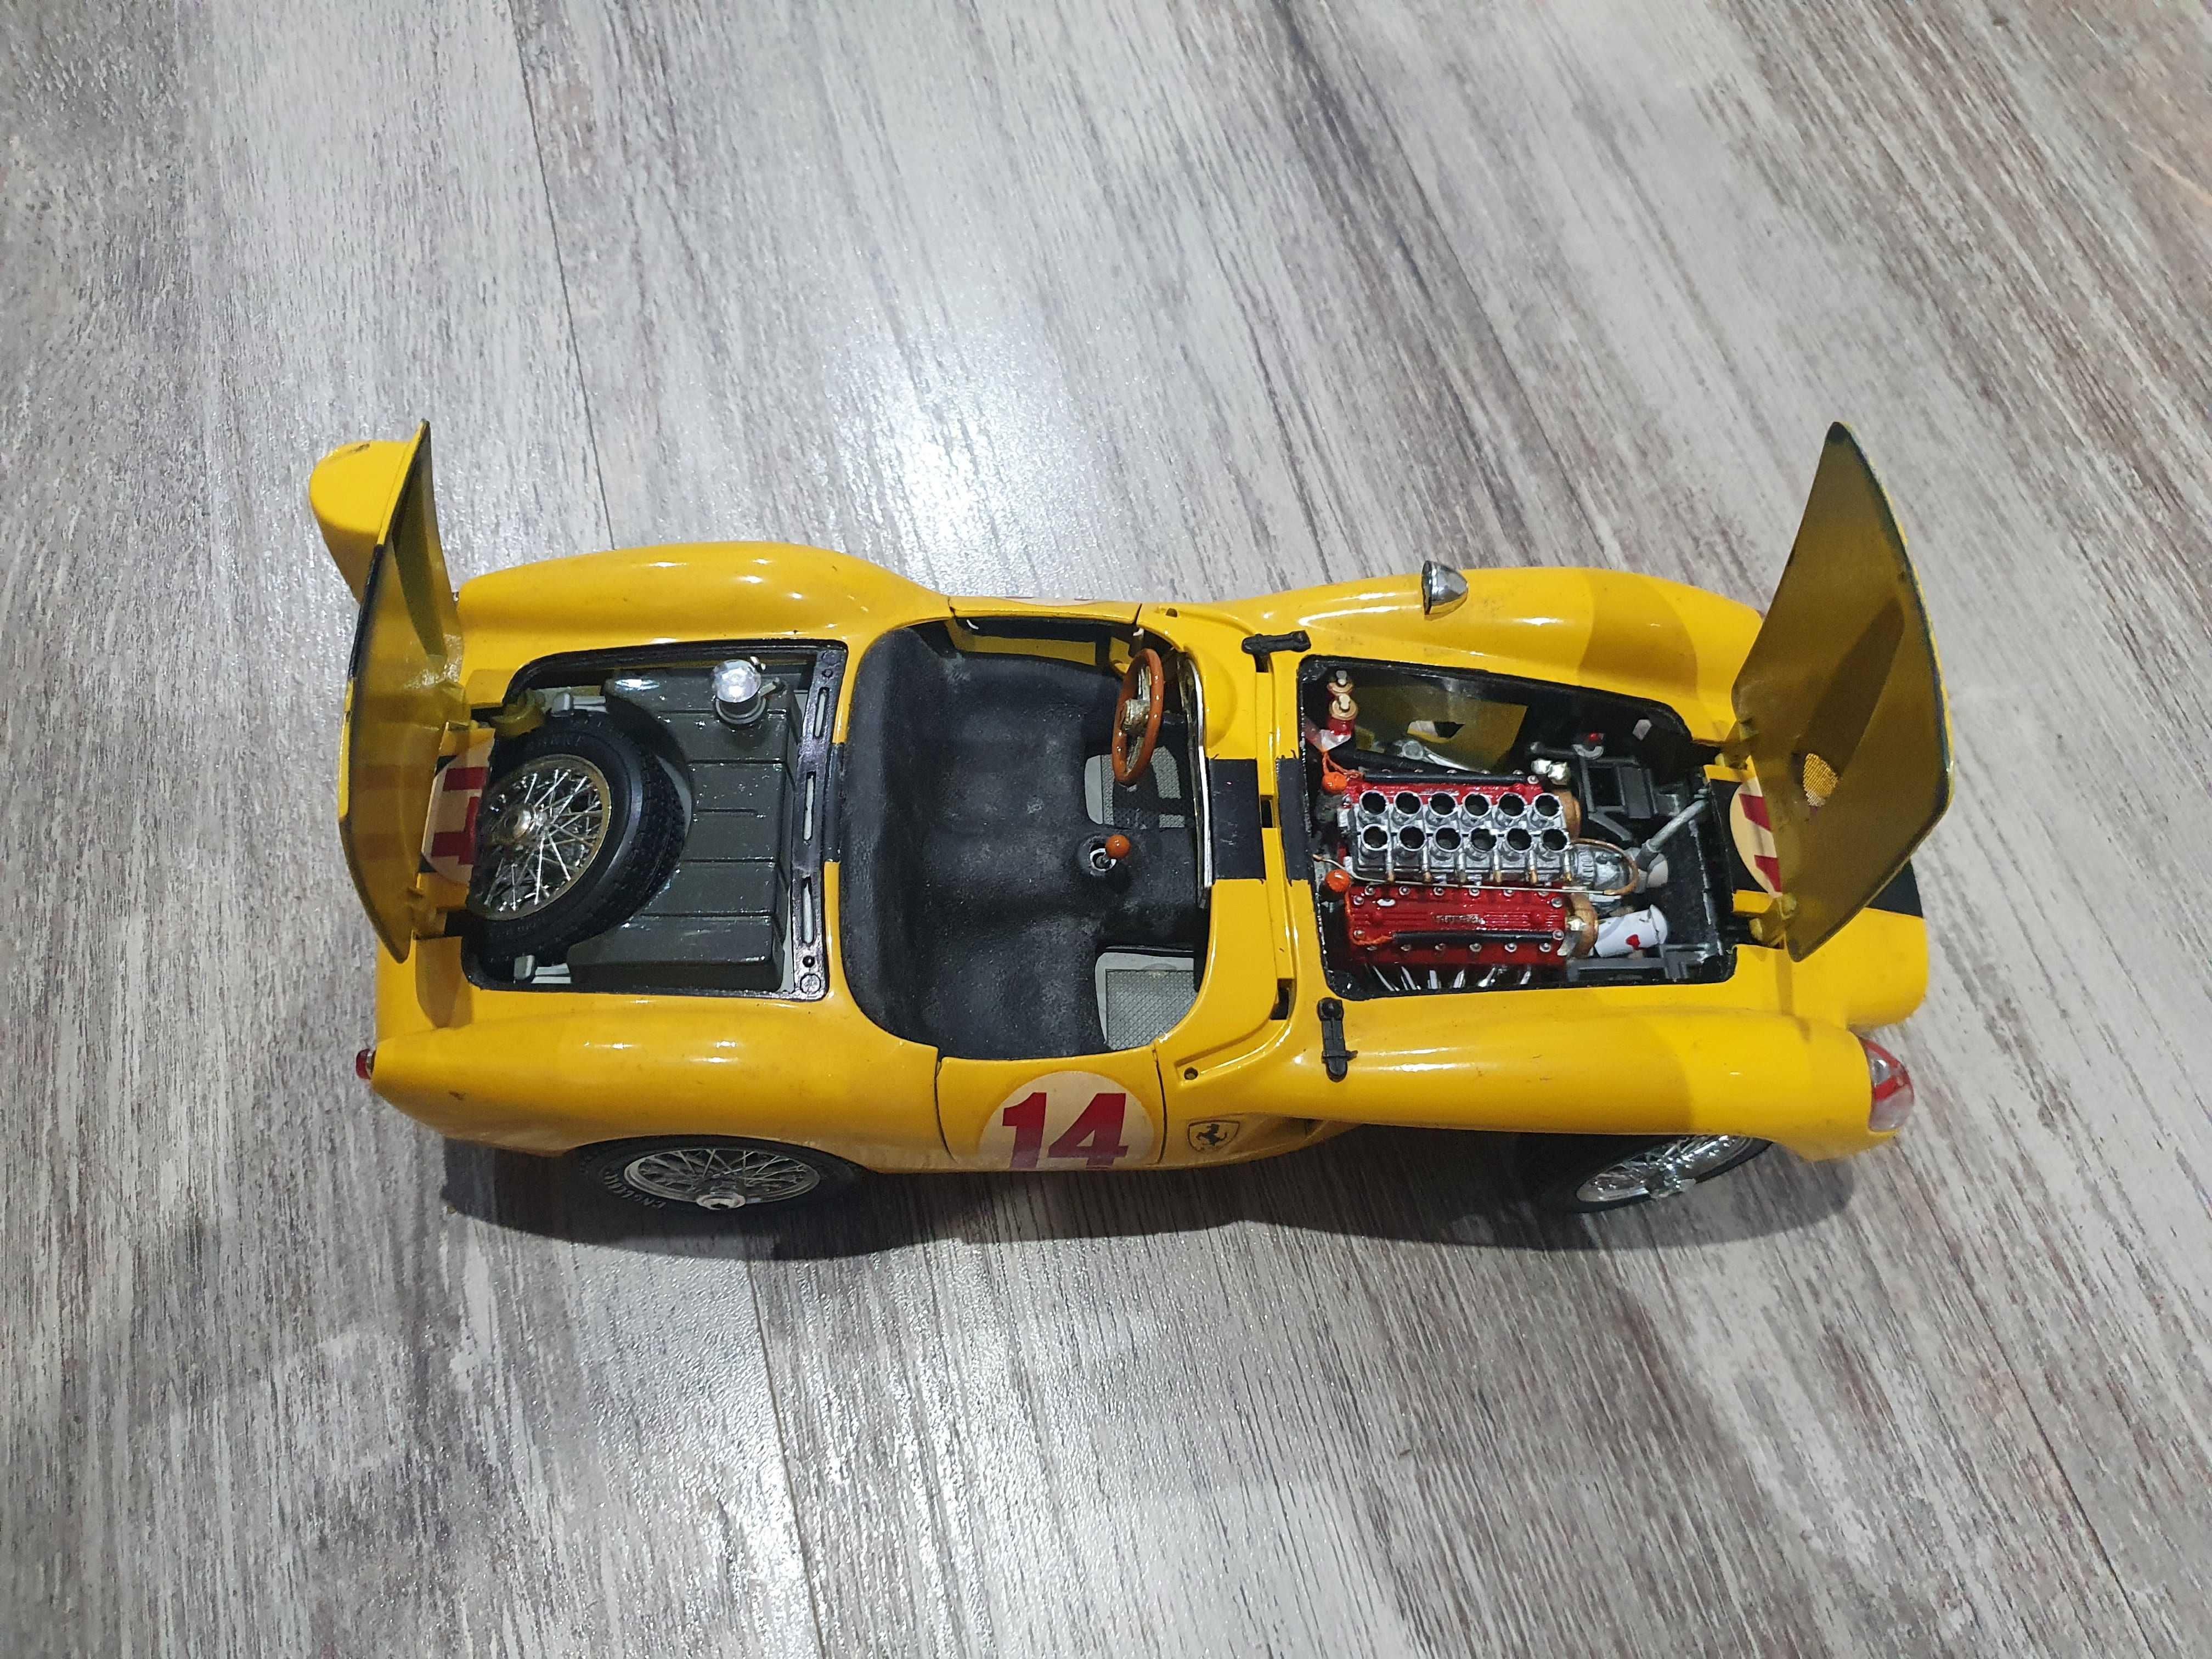 Auto Ferrari Burago - skala 1:18.       250 Testa Rossa